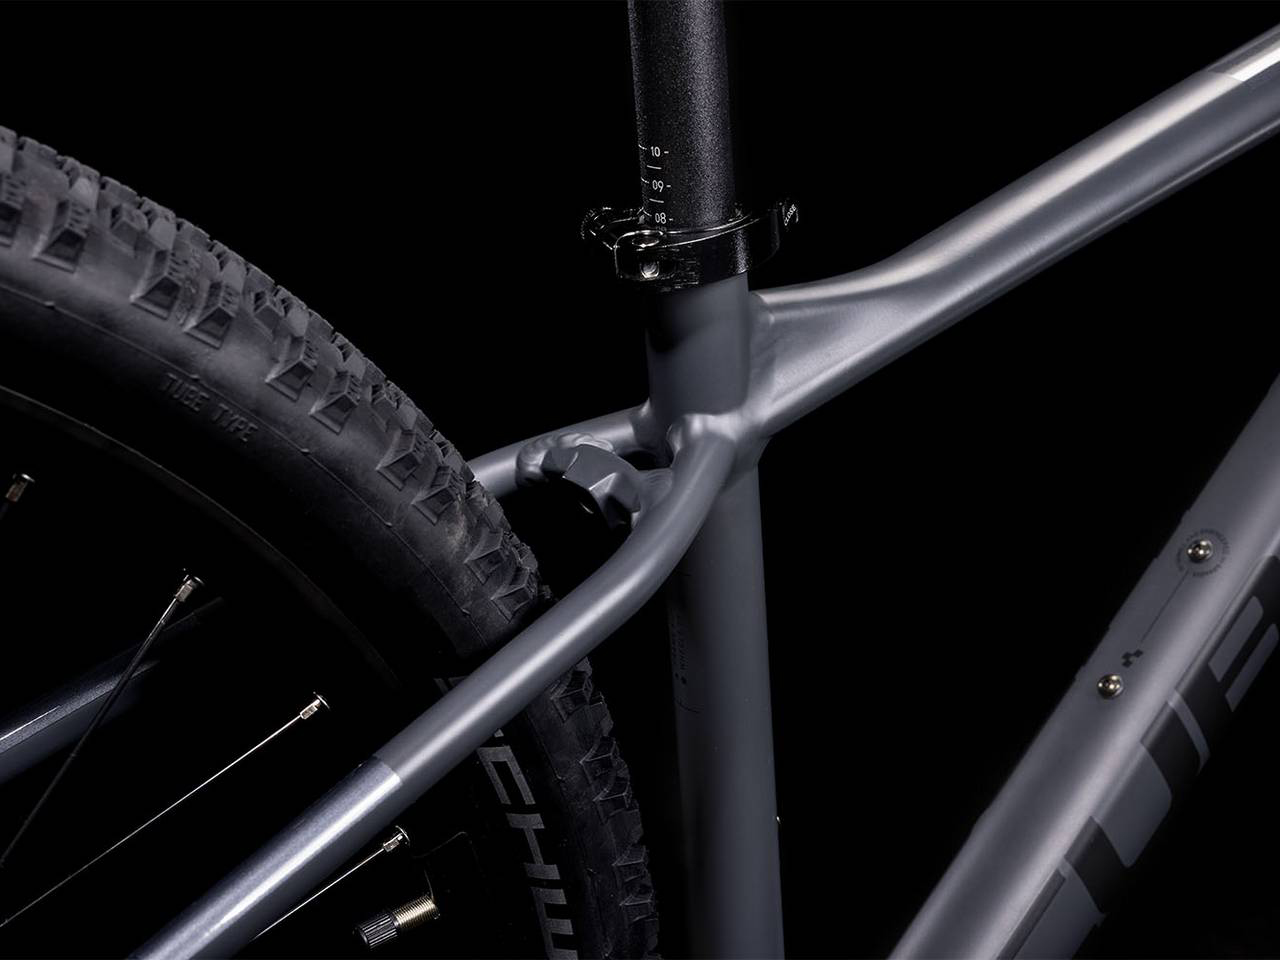 Poignées pour Vélo Cube Acide React Pro Vélo Poignées Noir Gris